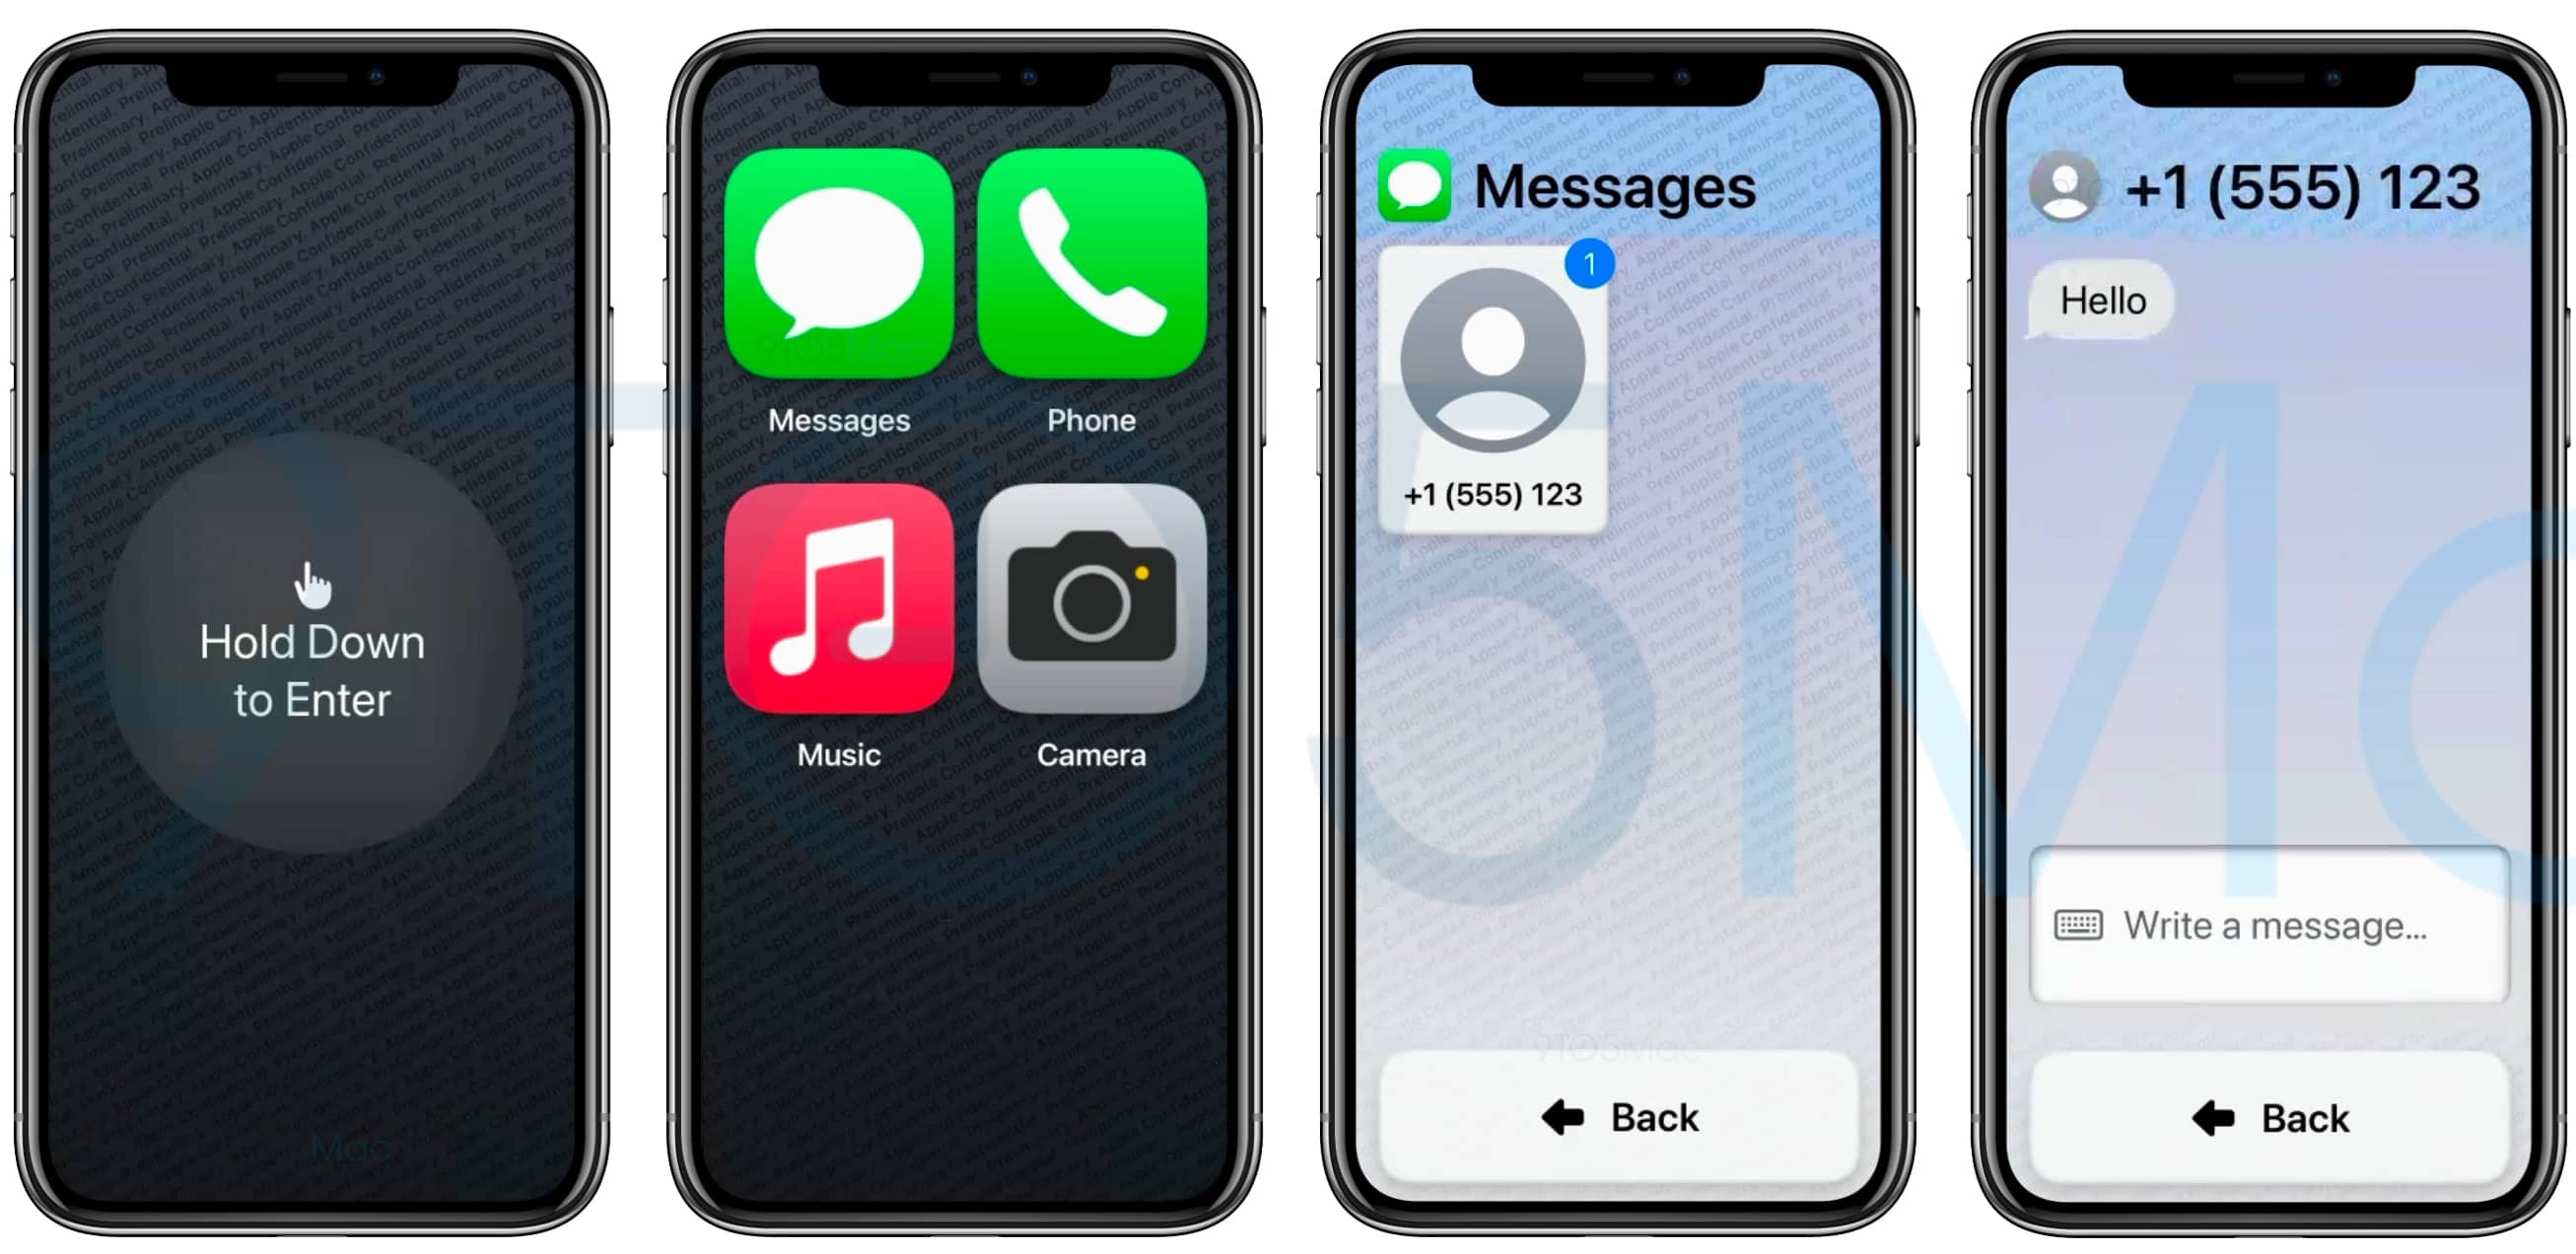 Benutzerdefinierter Barrierefreiheitsmodus in iOS 16, der eine Hold to Type-Nachricht, riesige erweiterte Symbole auf dem Bildschirm und einfachere Steuerelemente in der Nachrichten-App anzeigt